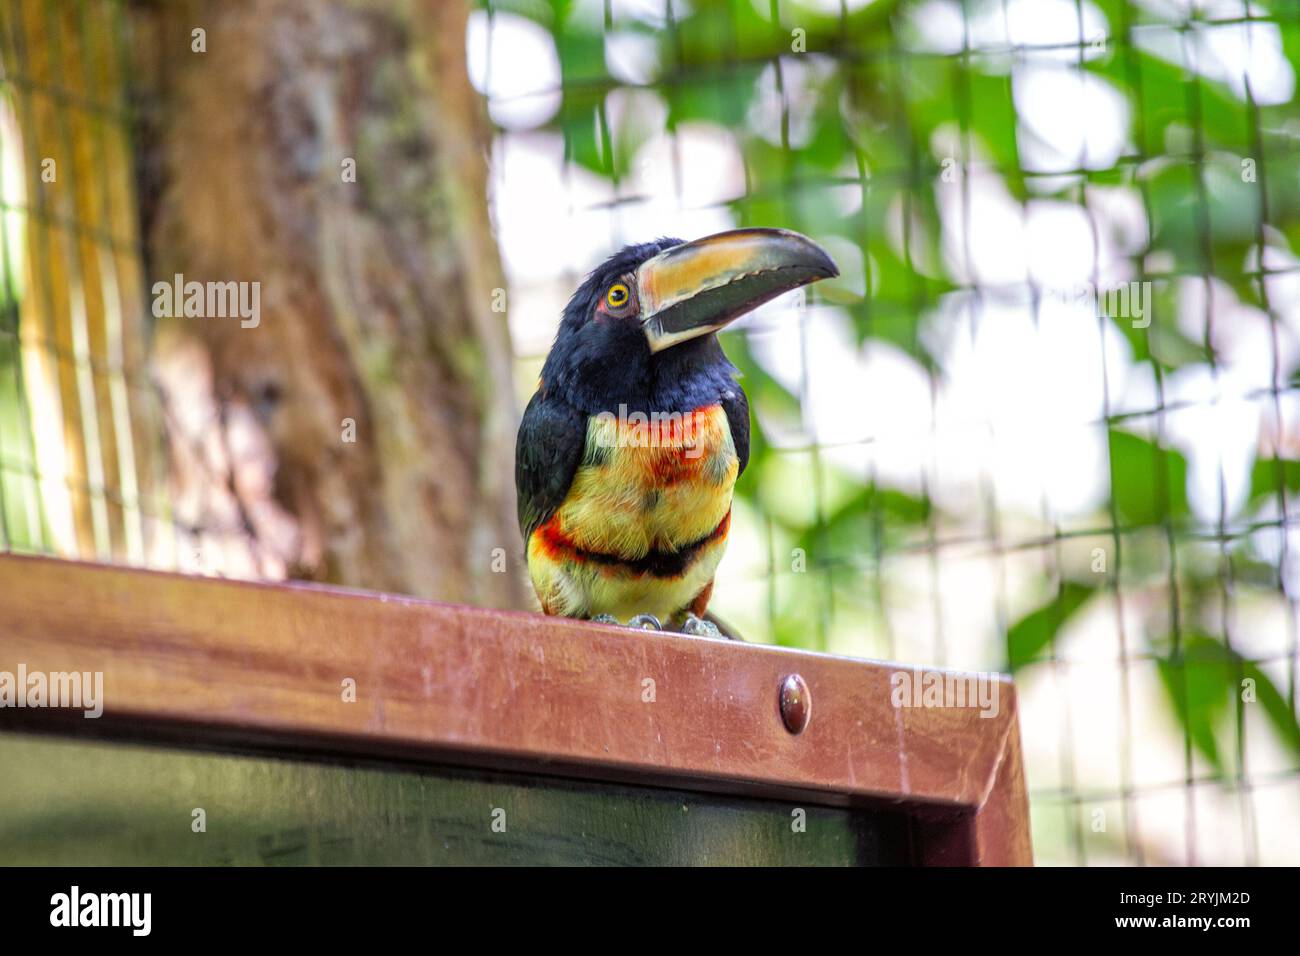 L'acari à col, scientifiquement connu sous le nom d'Accipiter cirrocephalus, est un oiseau de proie frappant originaire des forêts de Nouvelle-Guinée. Son caractère distinctif c Banque D'Images